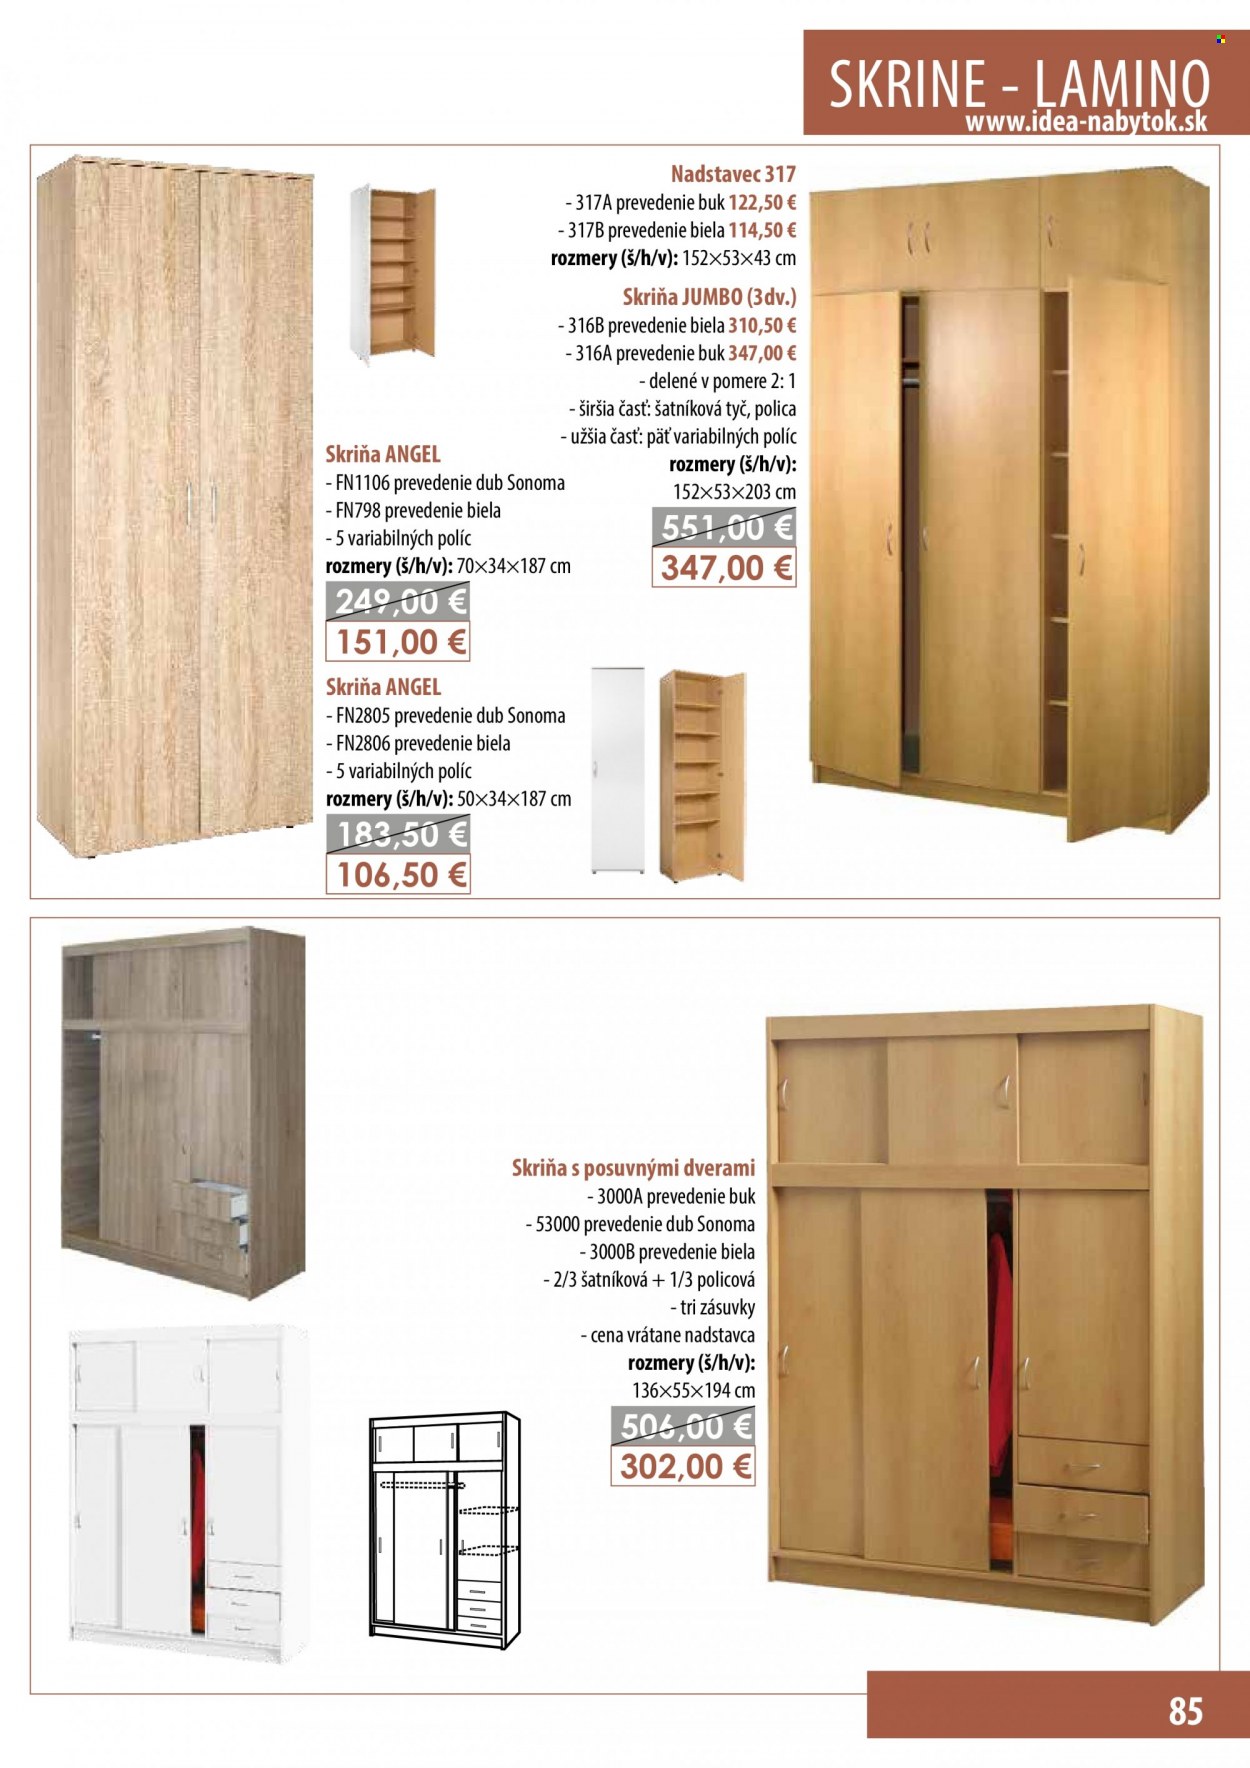 thumbnail - Leták IDEA nábytok - Produkty v akcii - skriňa s posuvnými dverami, skriňa, nadstavec. Strana 85.